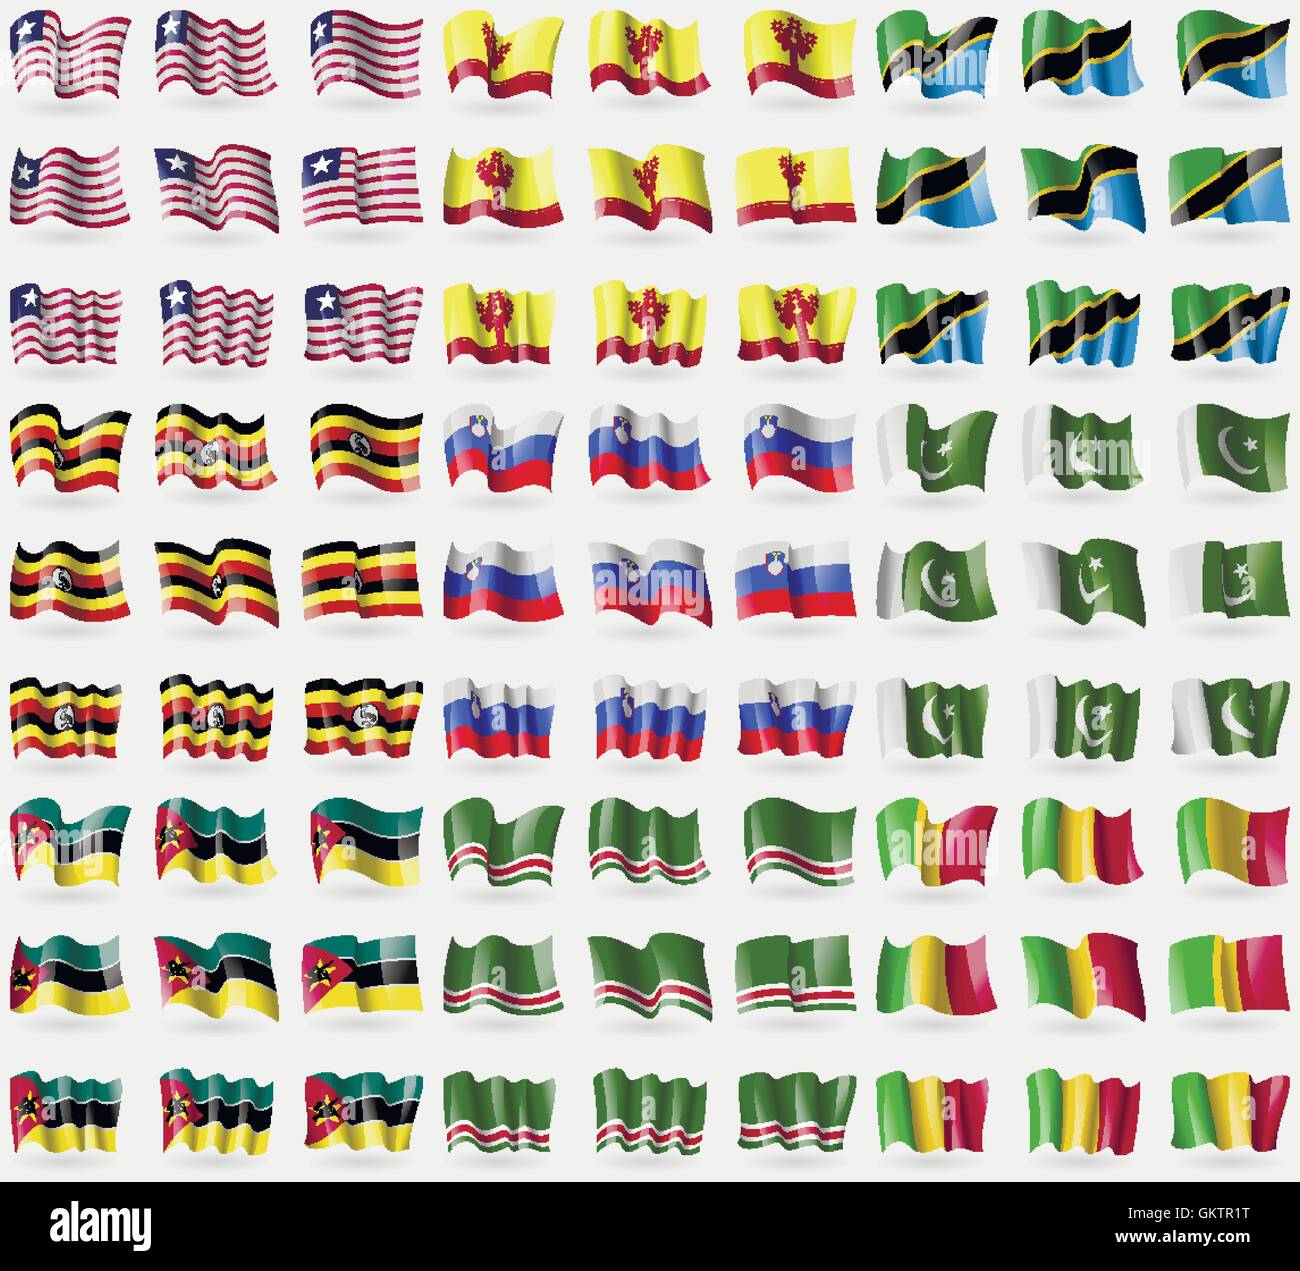 Liberia, Chuvashia, Tanzania, Uganda, Slovenia, il Pakistan, il Mozambico, la Repubblica cecena di Ichkeria, Mali. Grande set di 81 bandiere. Vettore Illustrazione Vettoriale